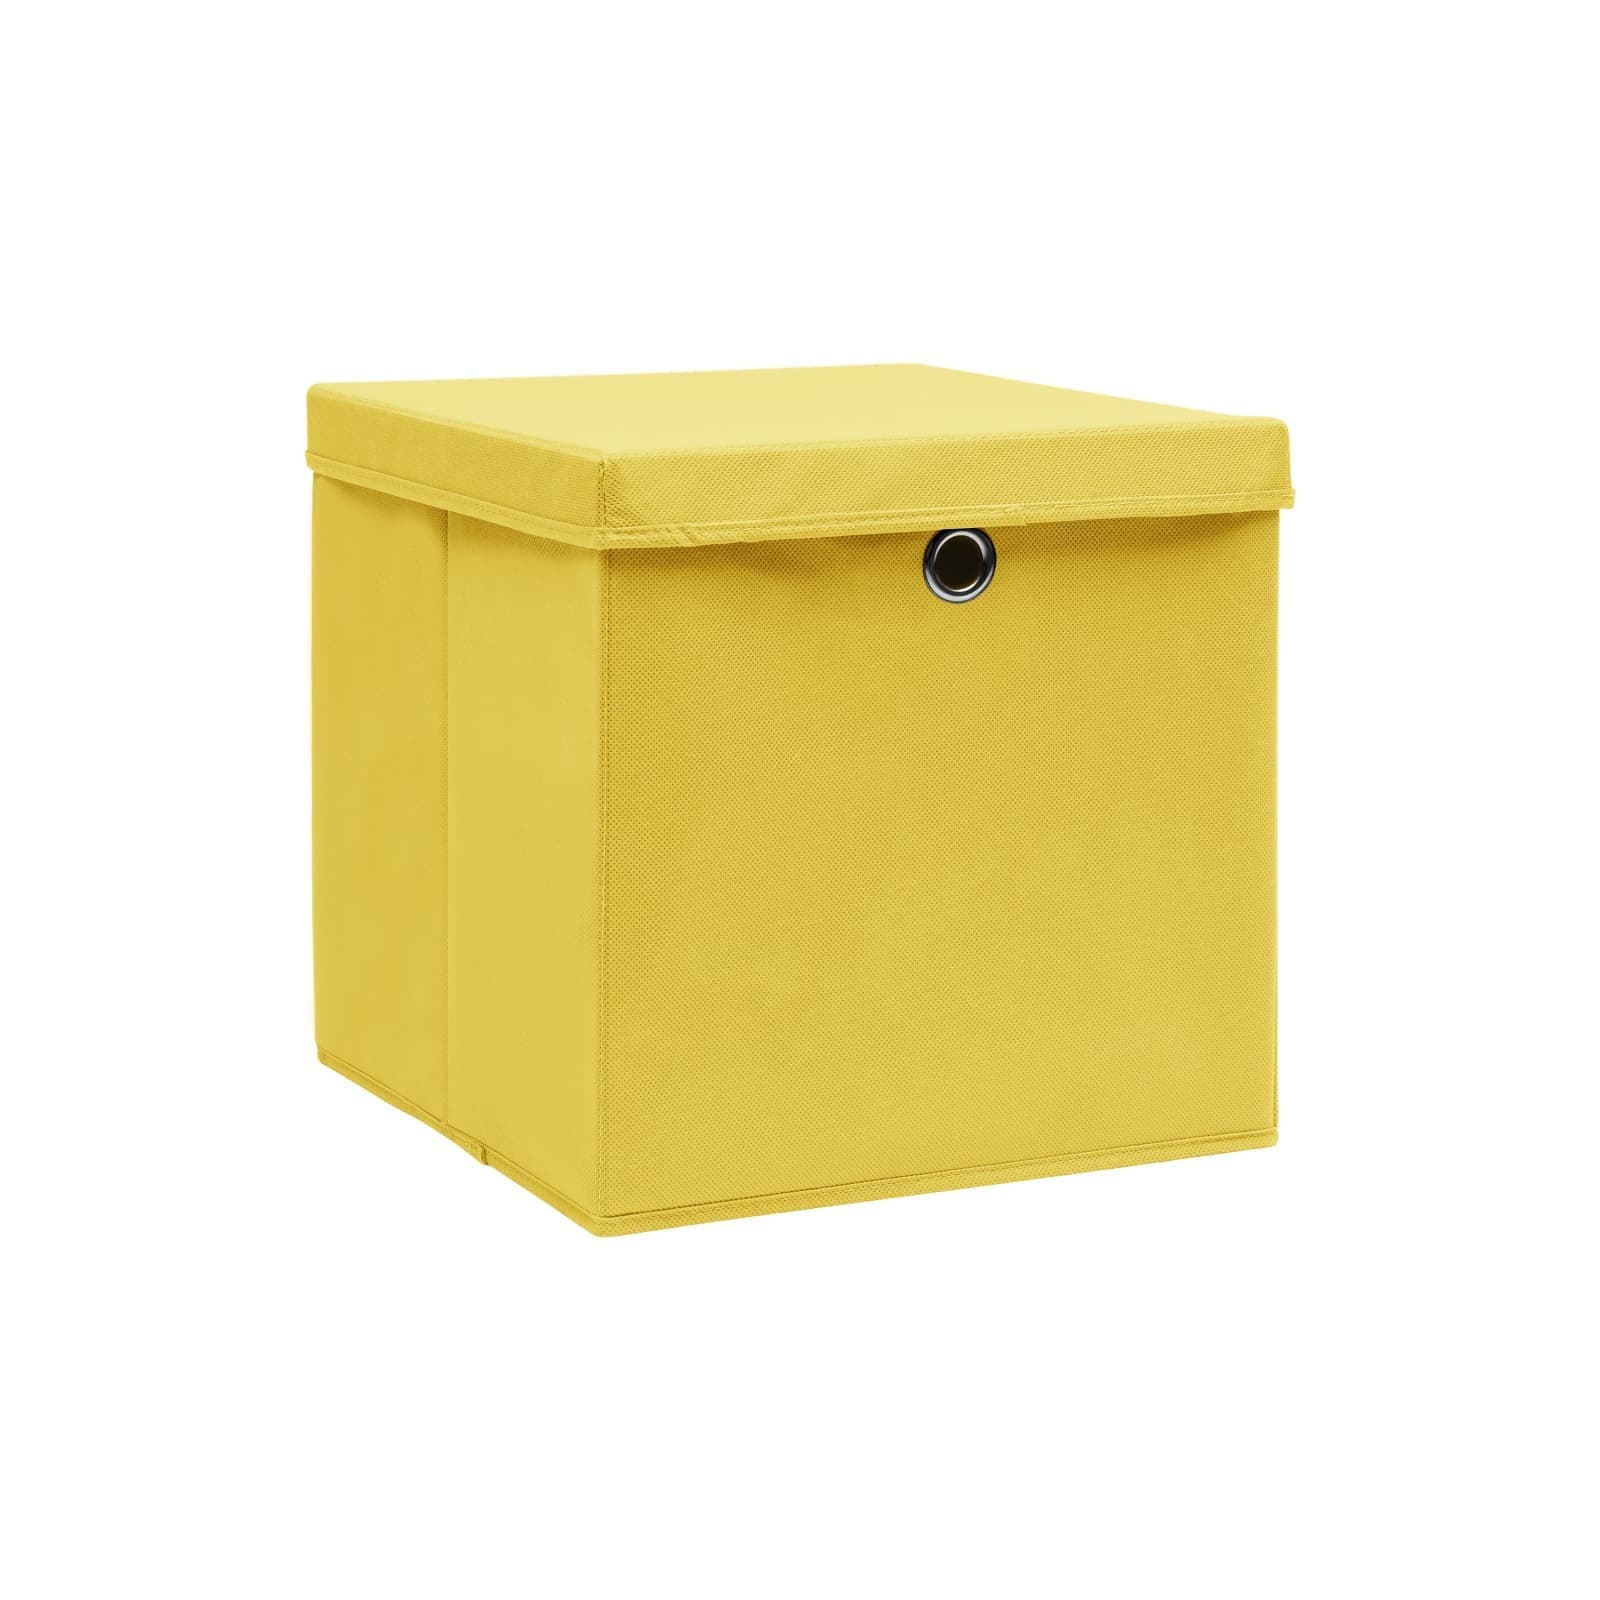 Caja de almacenaje plegable - AMARILLO - Kiabi - 5.00€